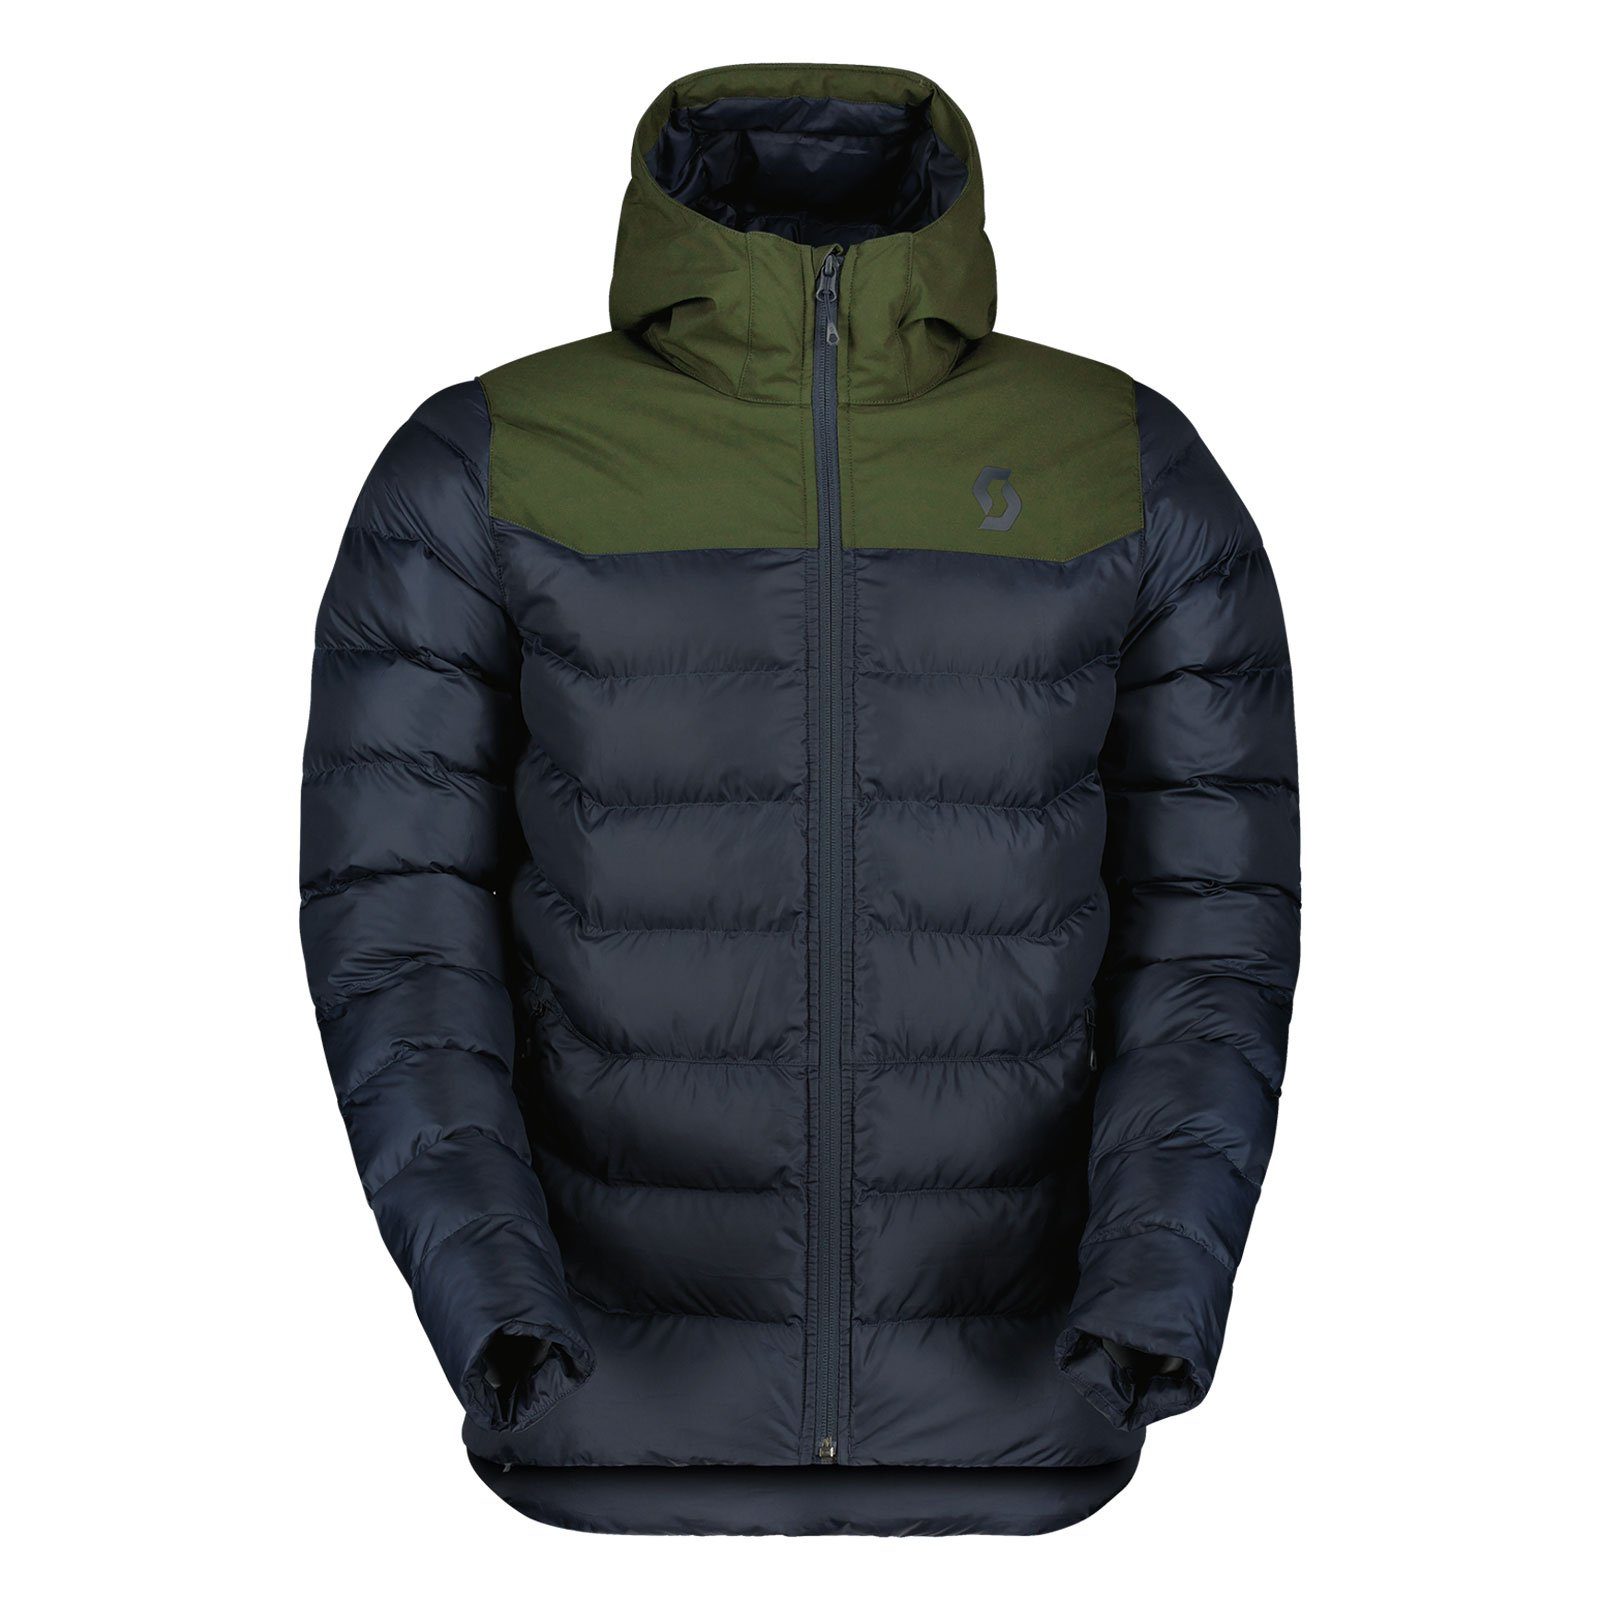 Scott Winterjacke Insuloft Warm Jacke teilweise nachhaltig hergestellt 7504 fir green / dark blue